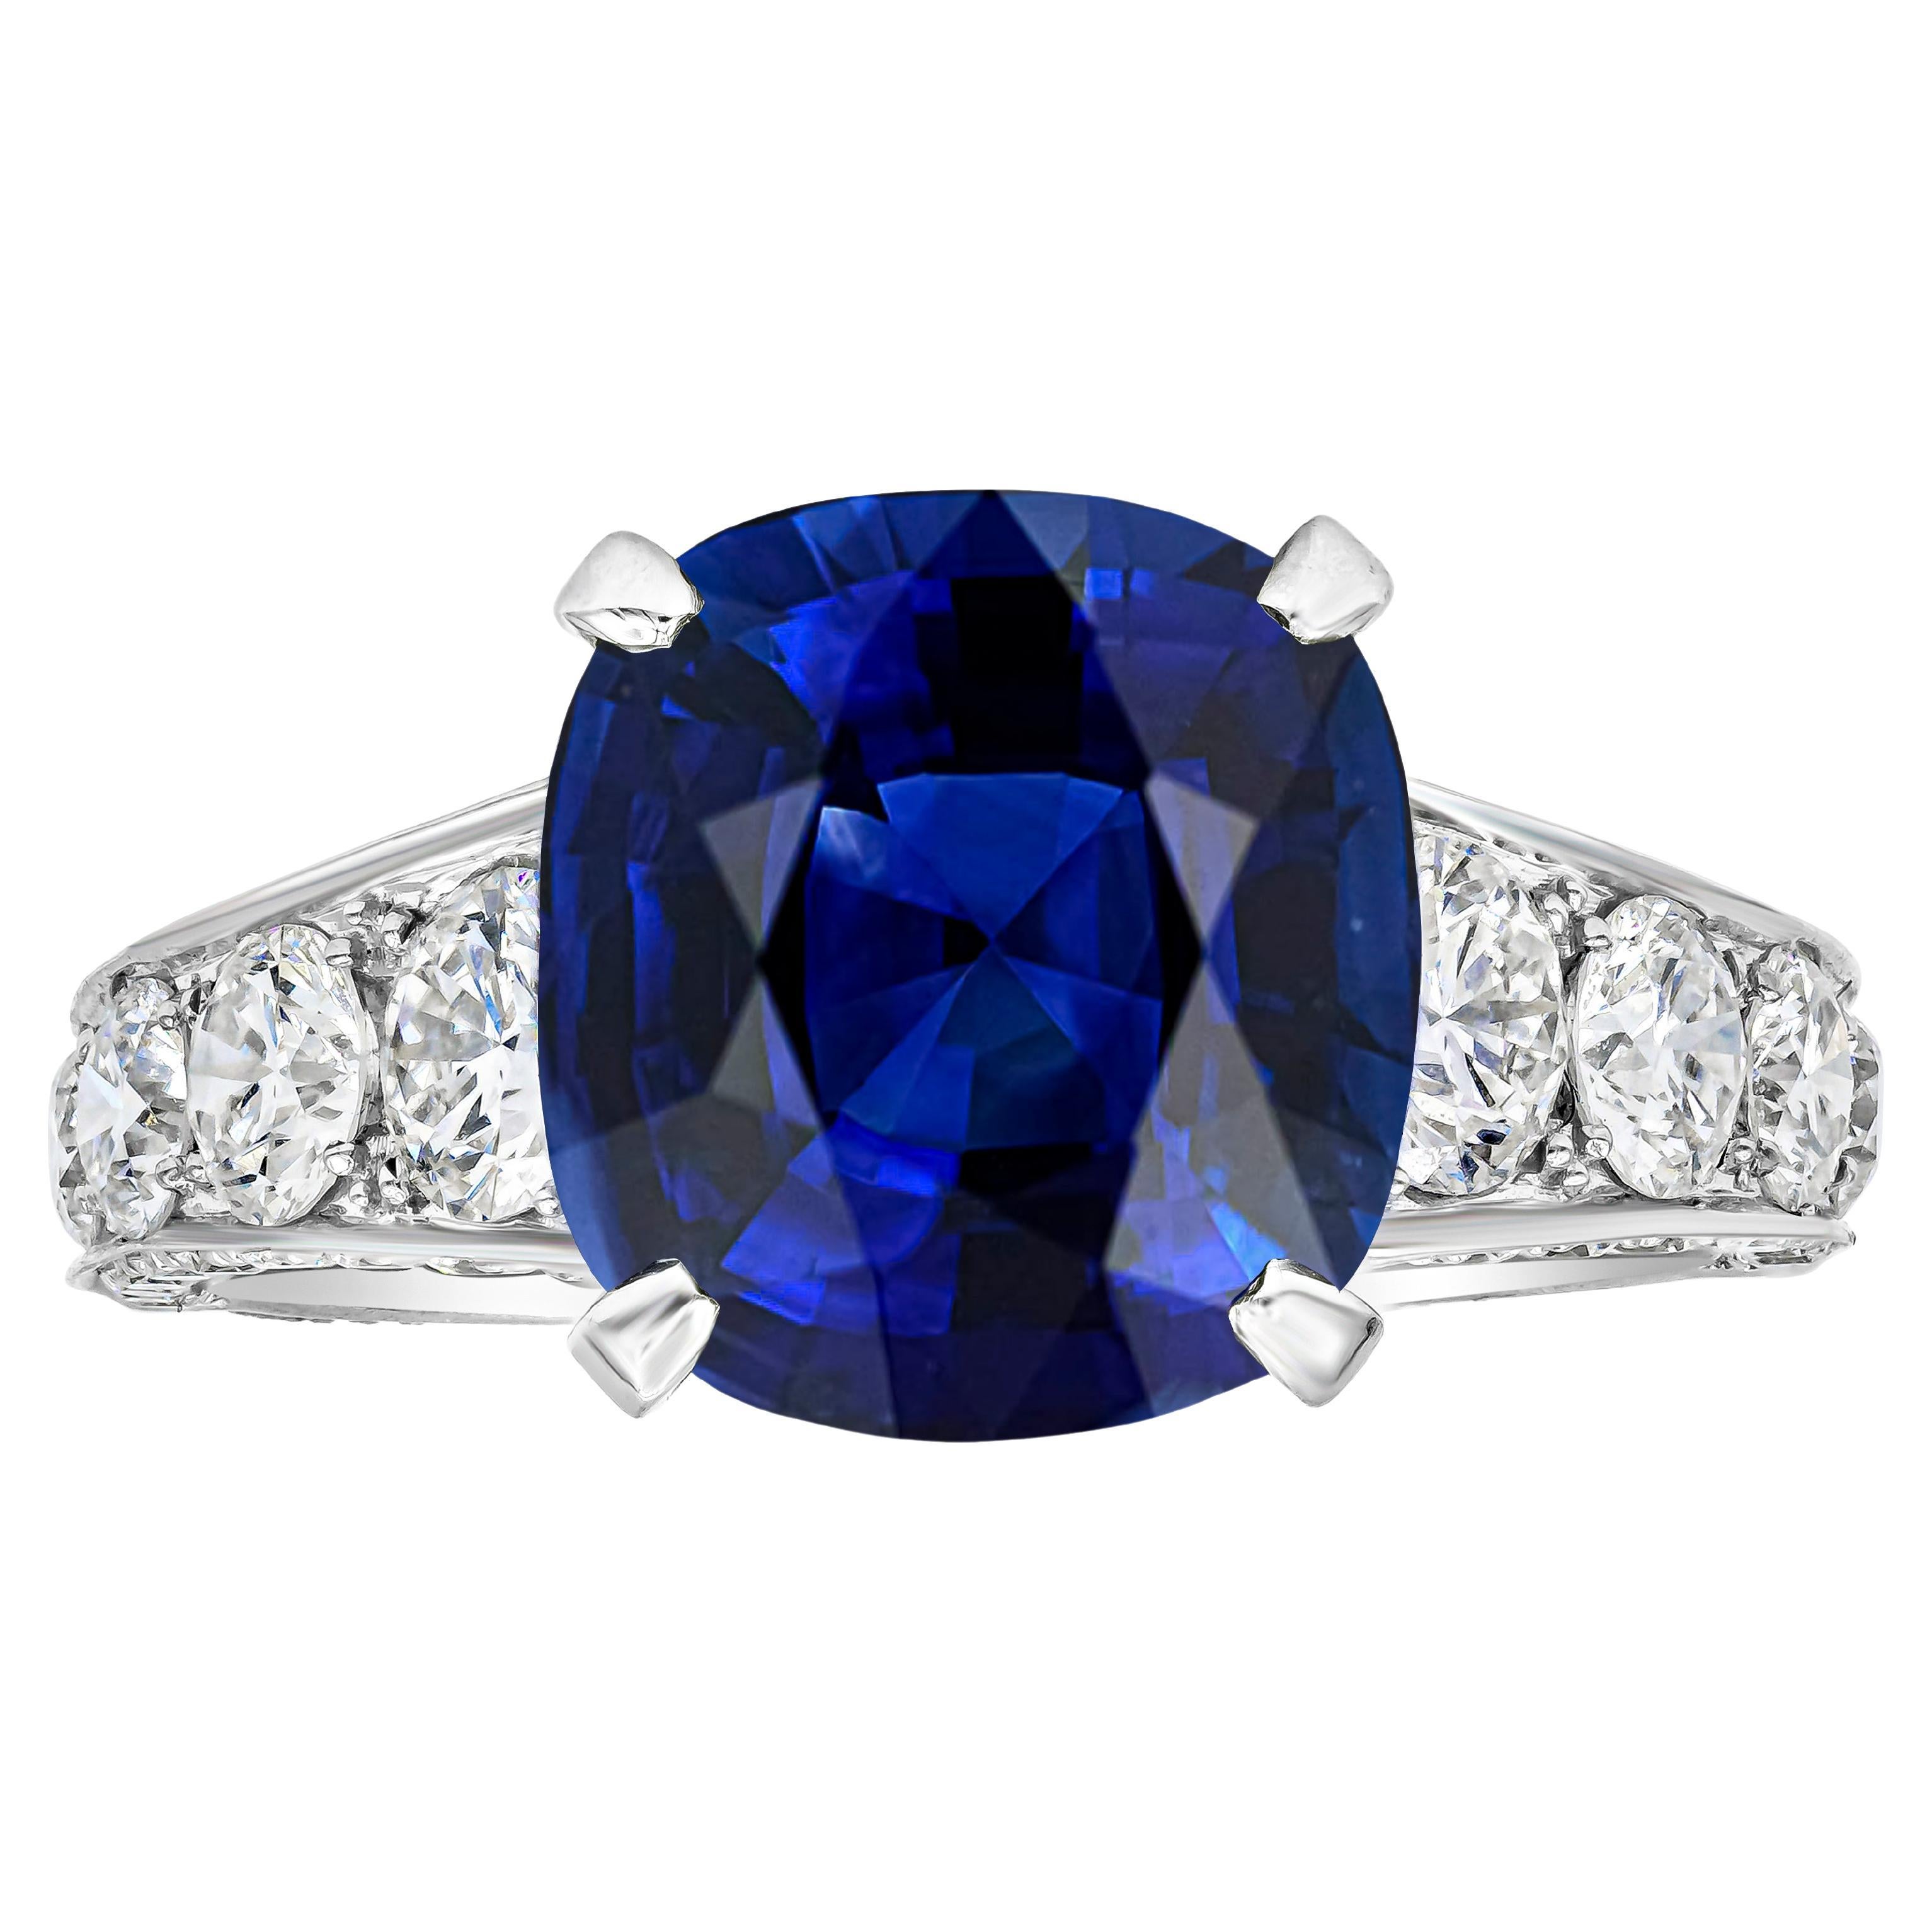 Roman Malakov Verlobungsring mit 7,66 Karat blauem Saphir im Kissenschliff und Diamanten